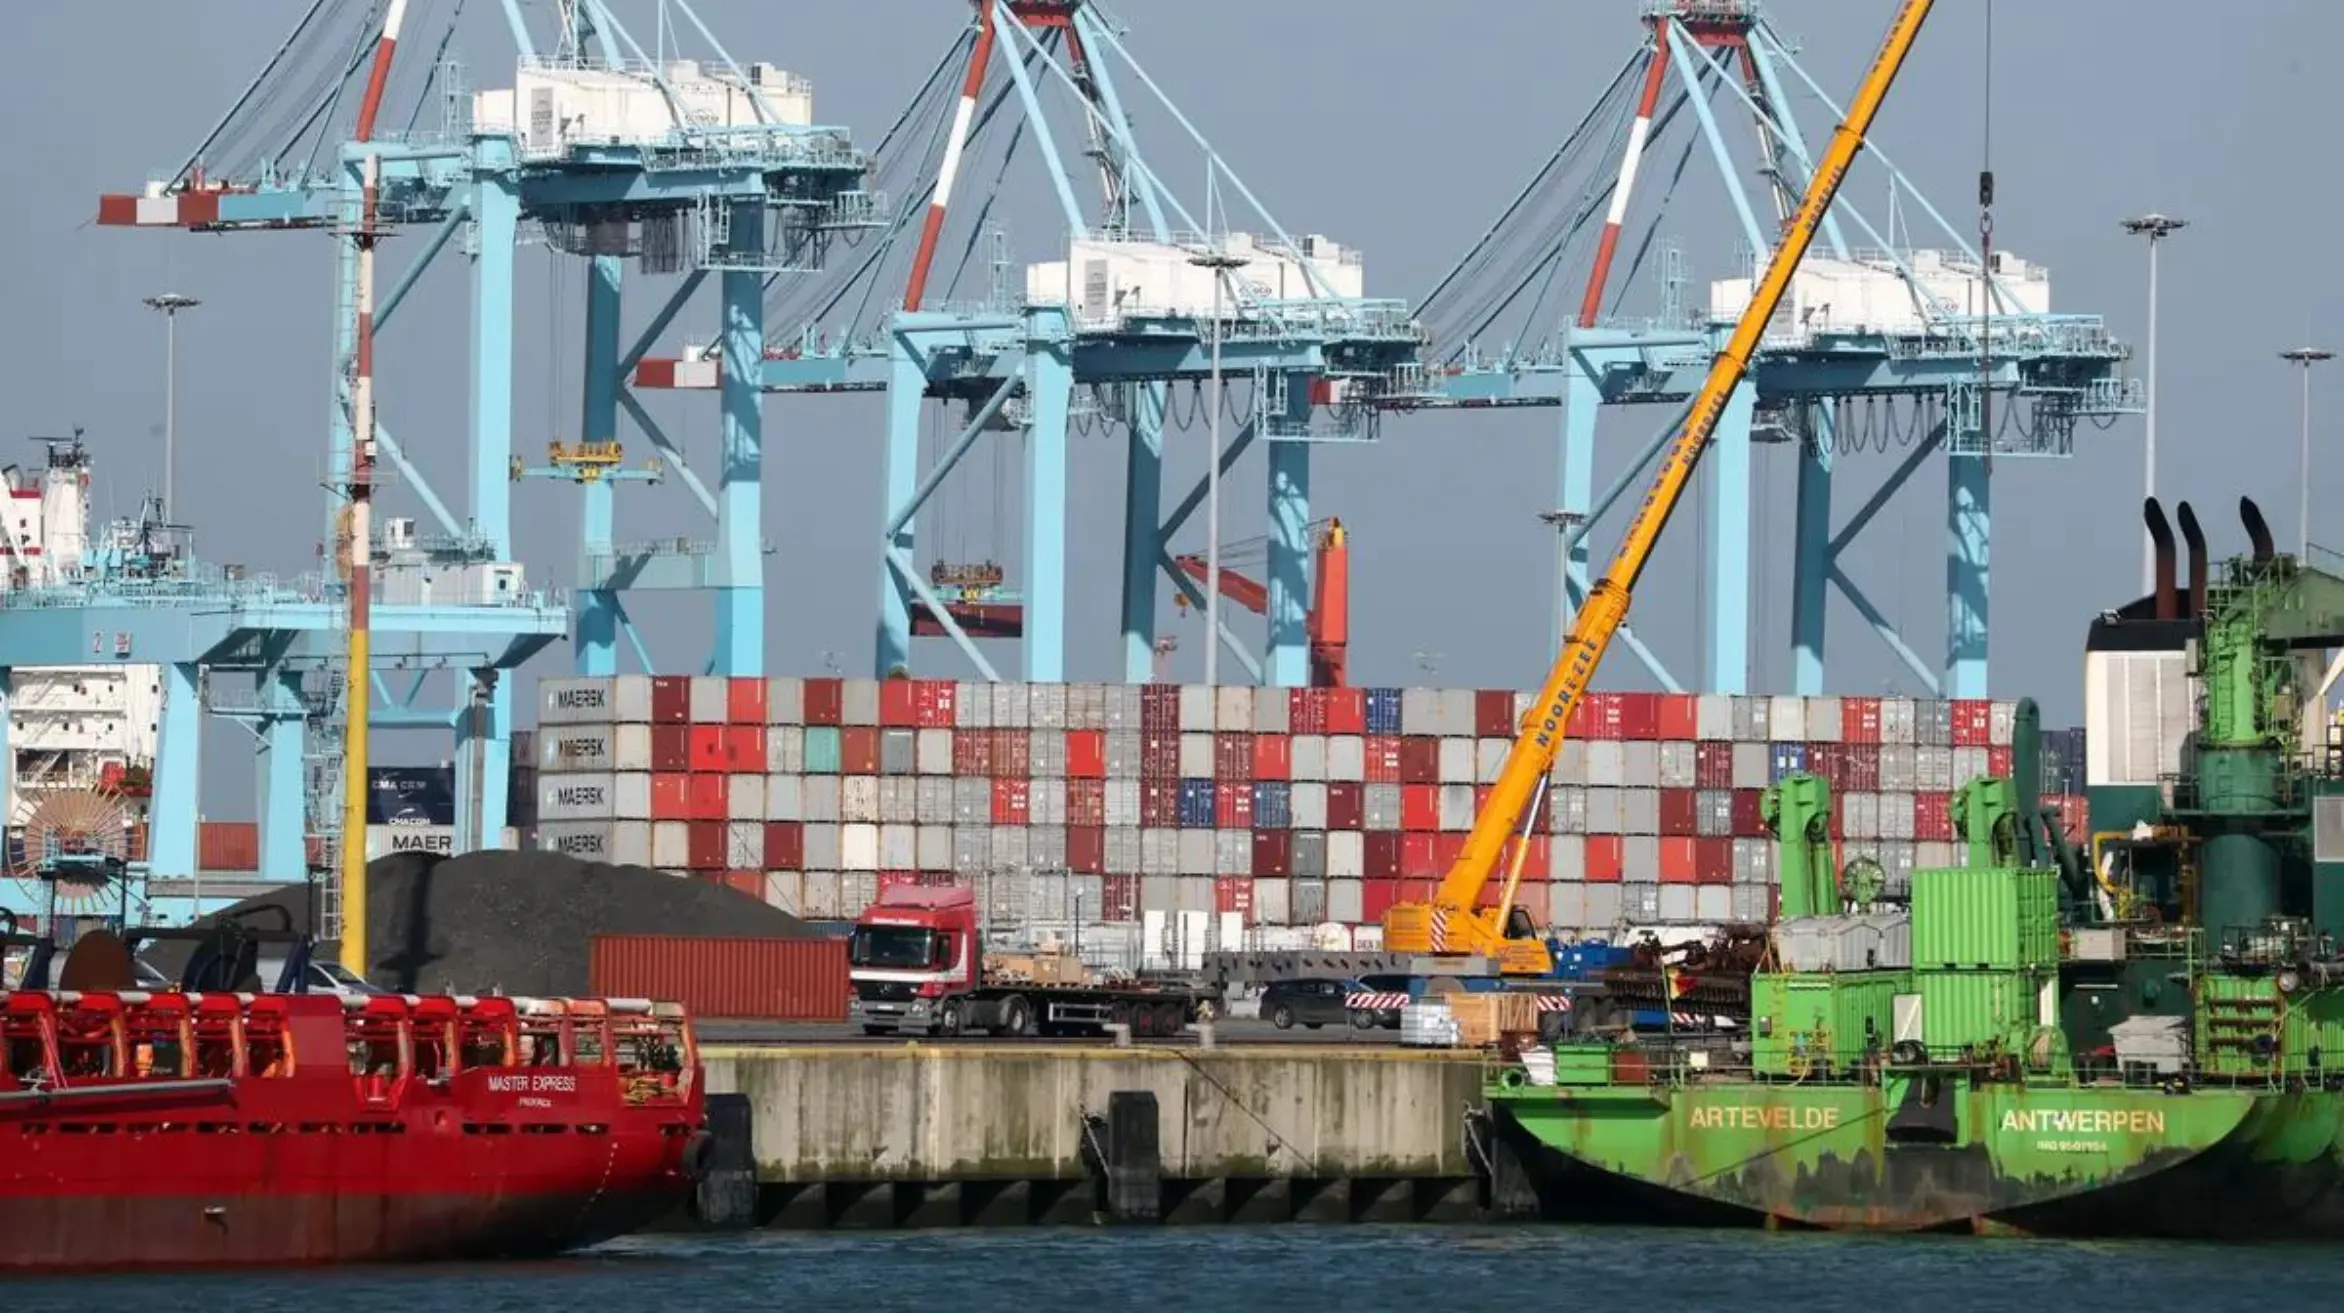 Zeebrugge's Carport Challenges Managing Overflow in Global Trade